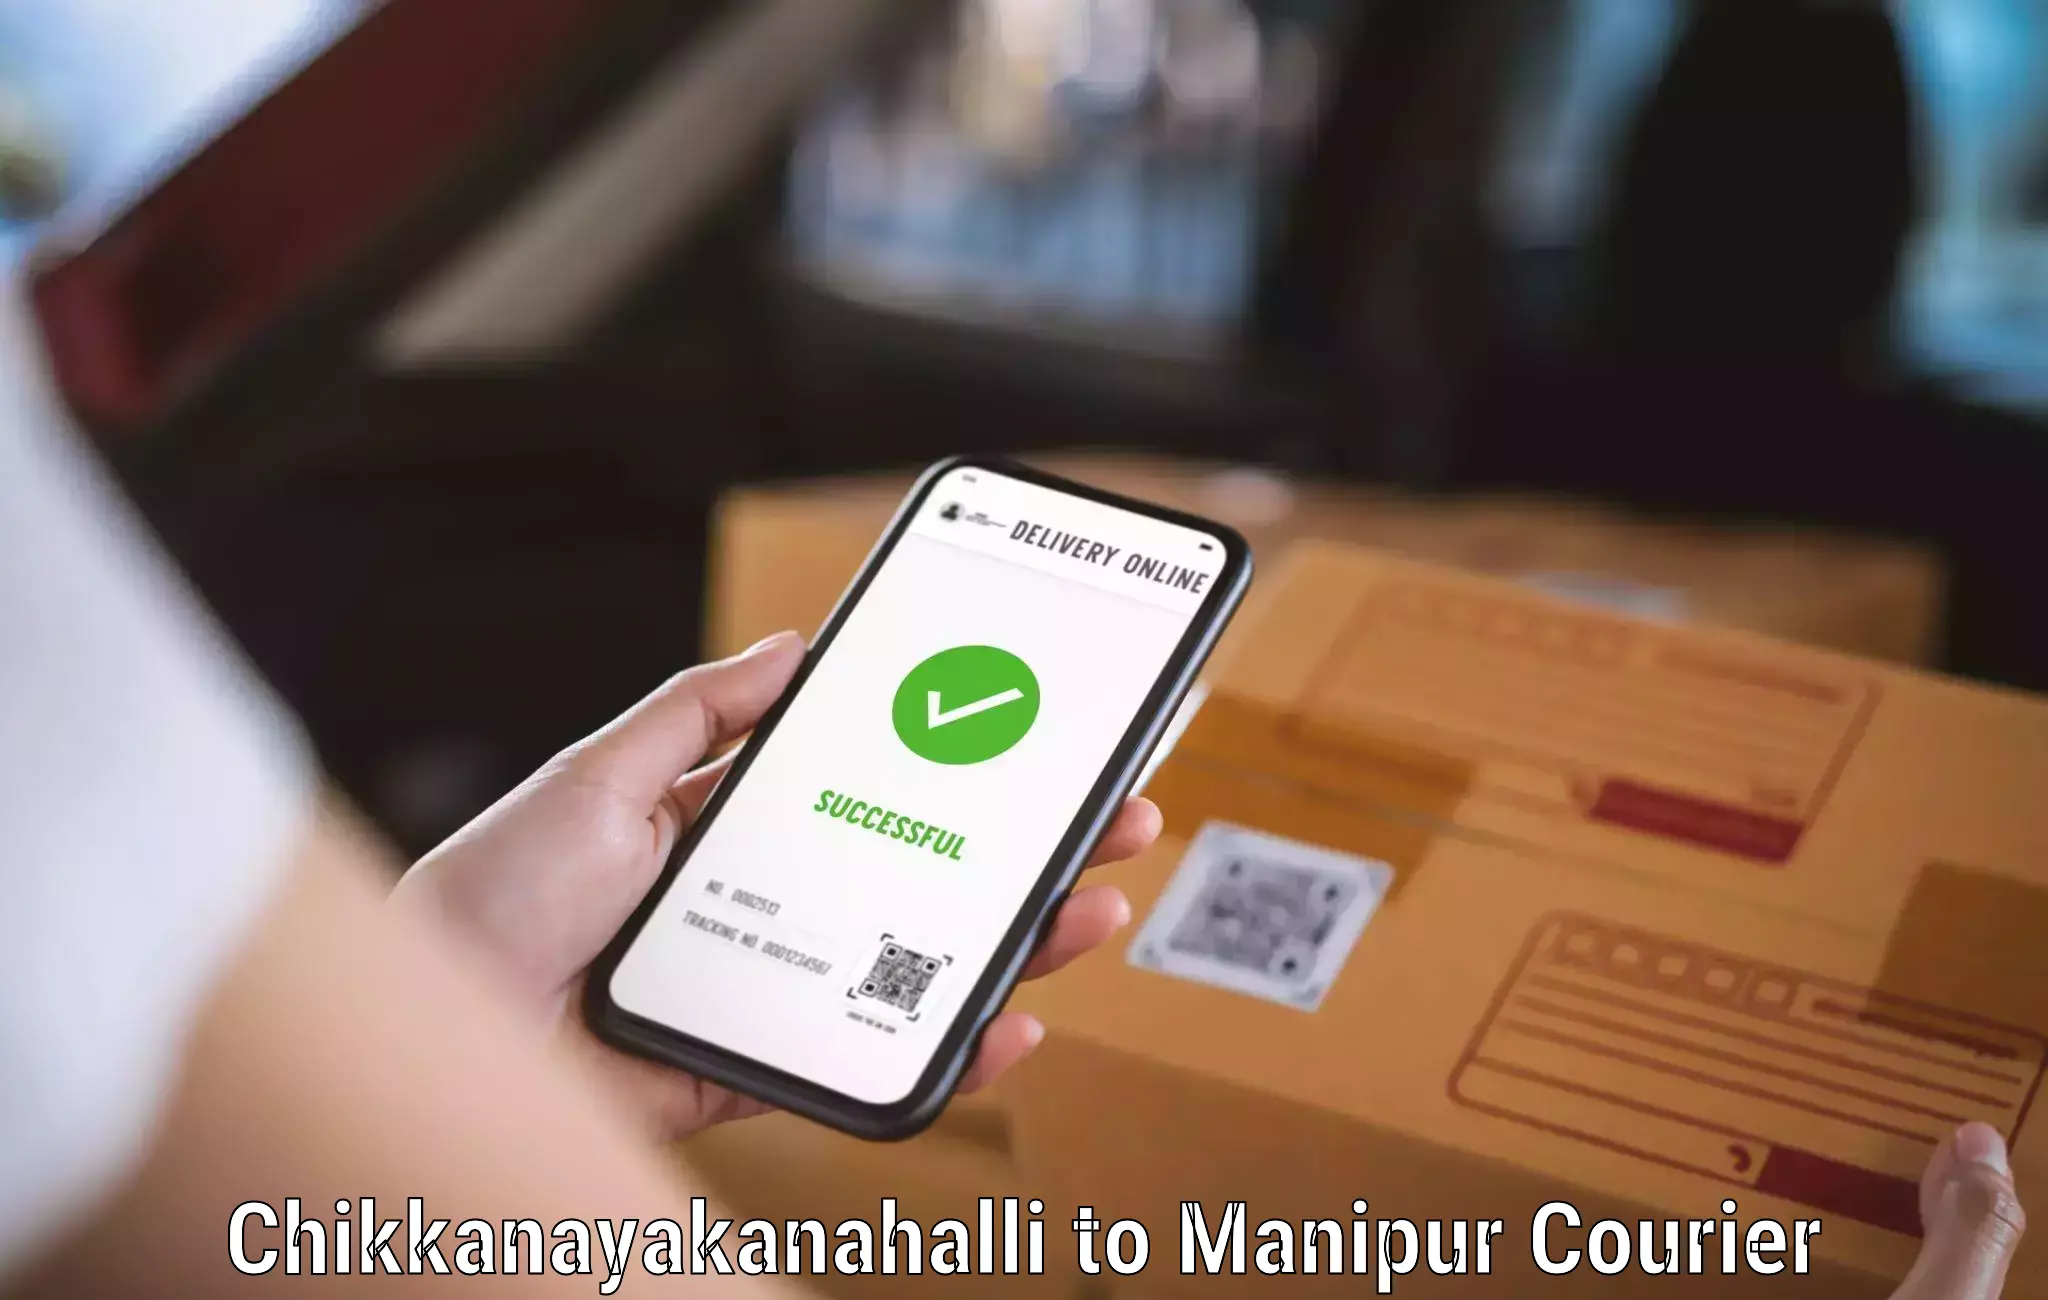 Nationwide courier service Chikkanayakanahalli to Kaptipada